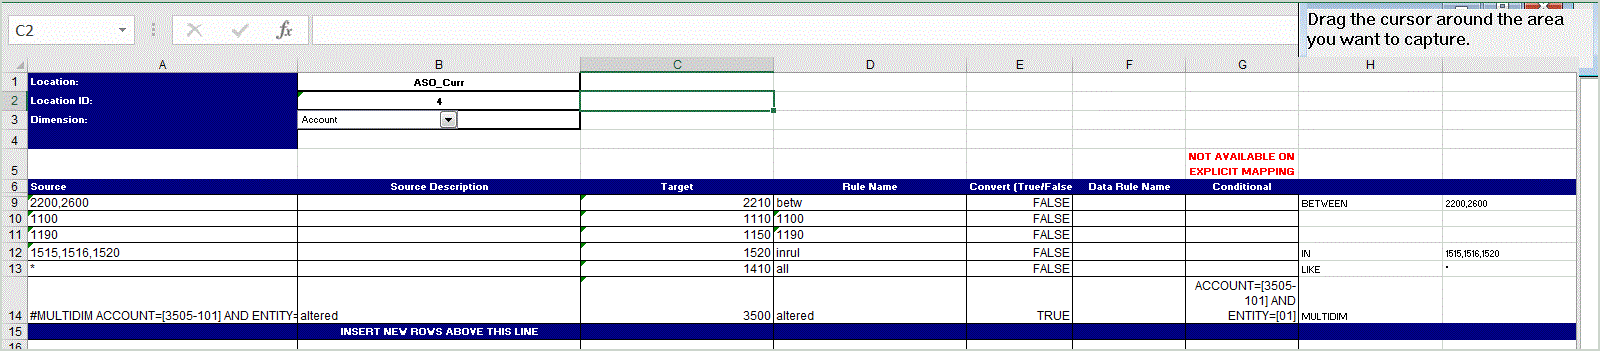 Image présentant les mappings exportés dans Excel.